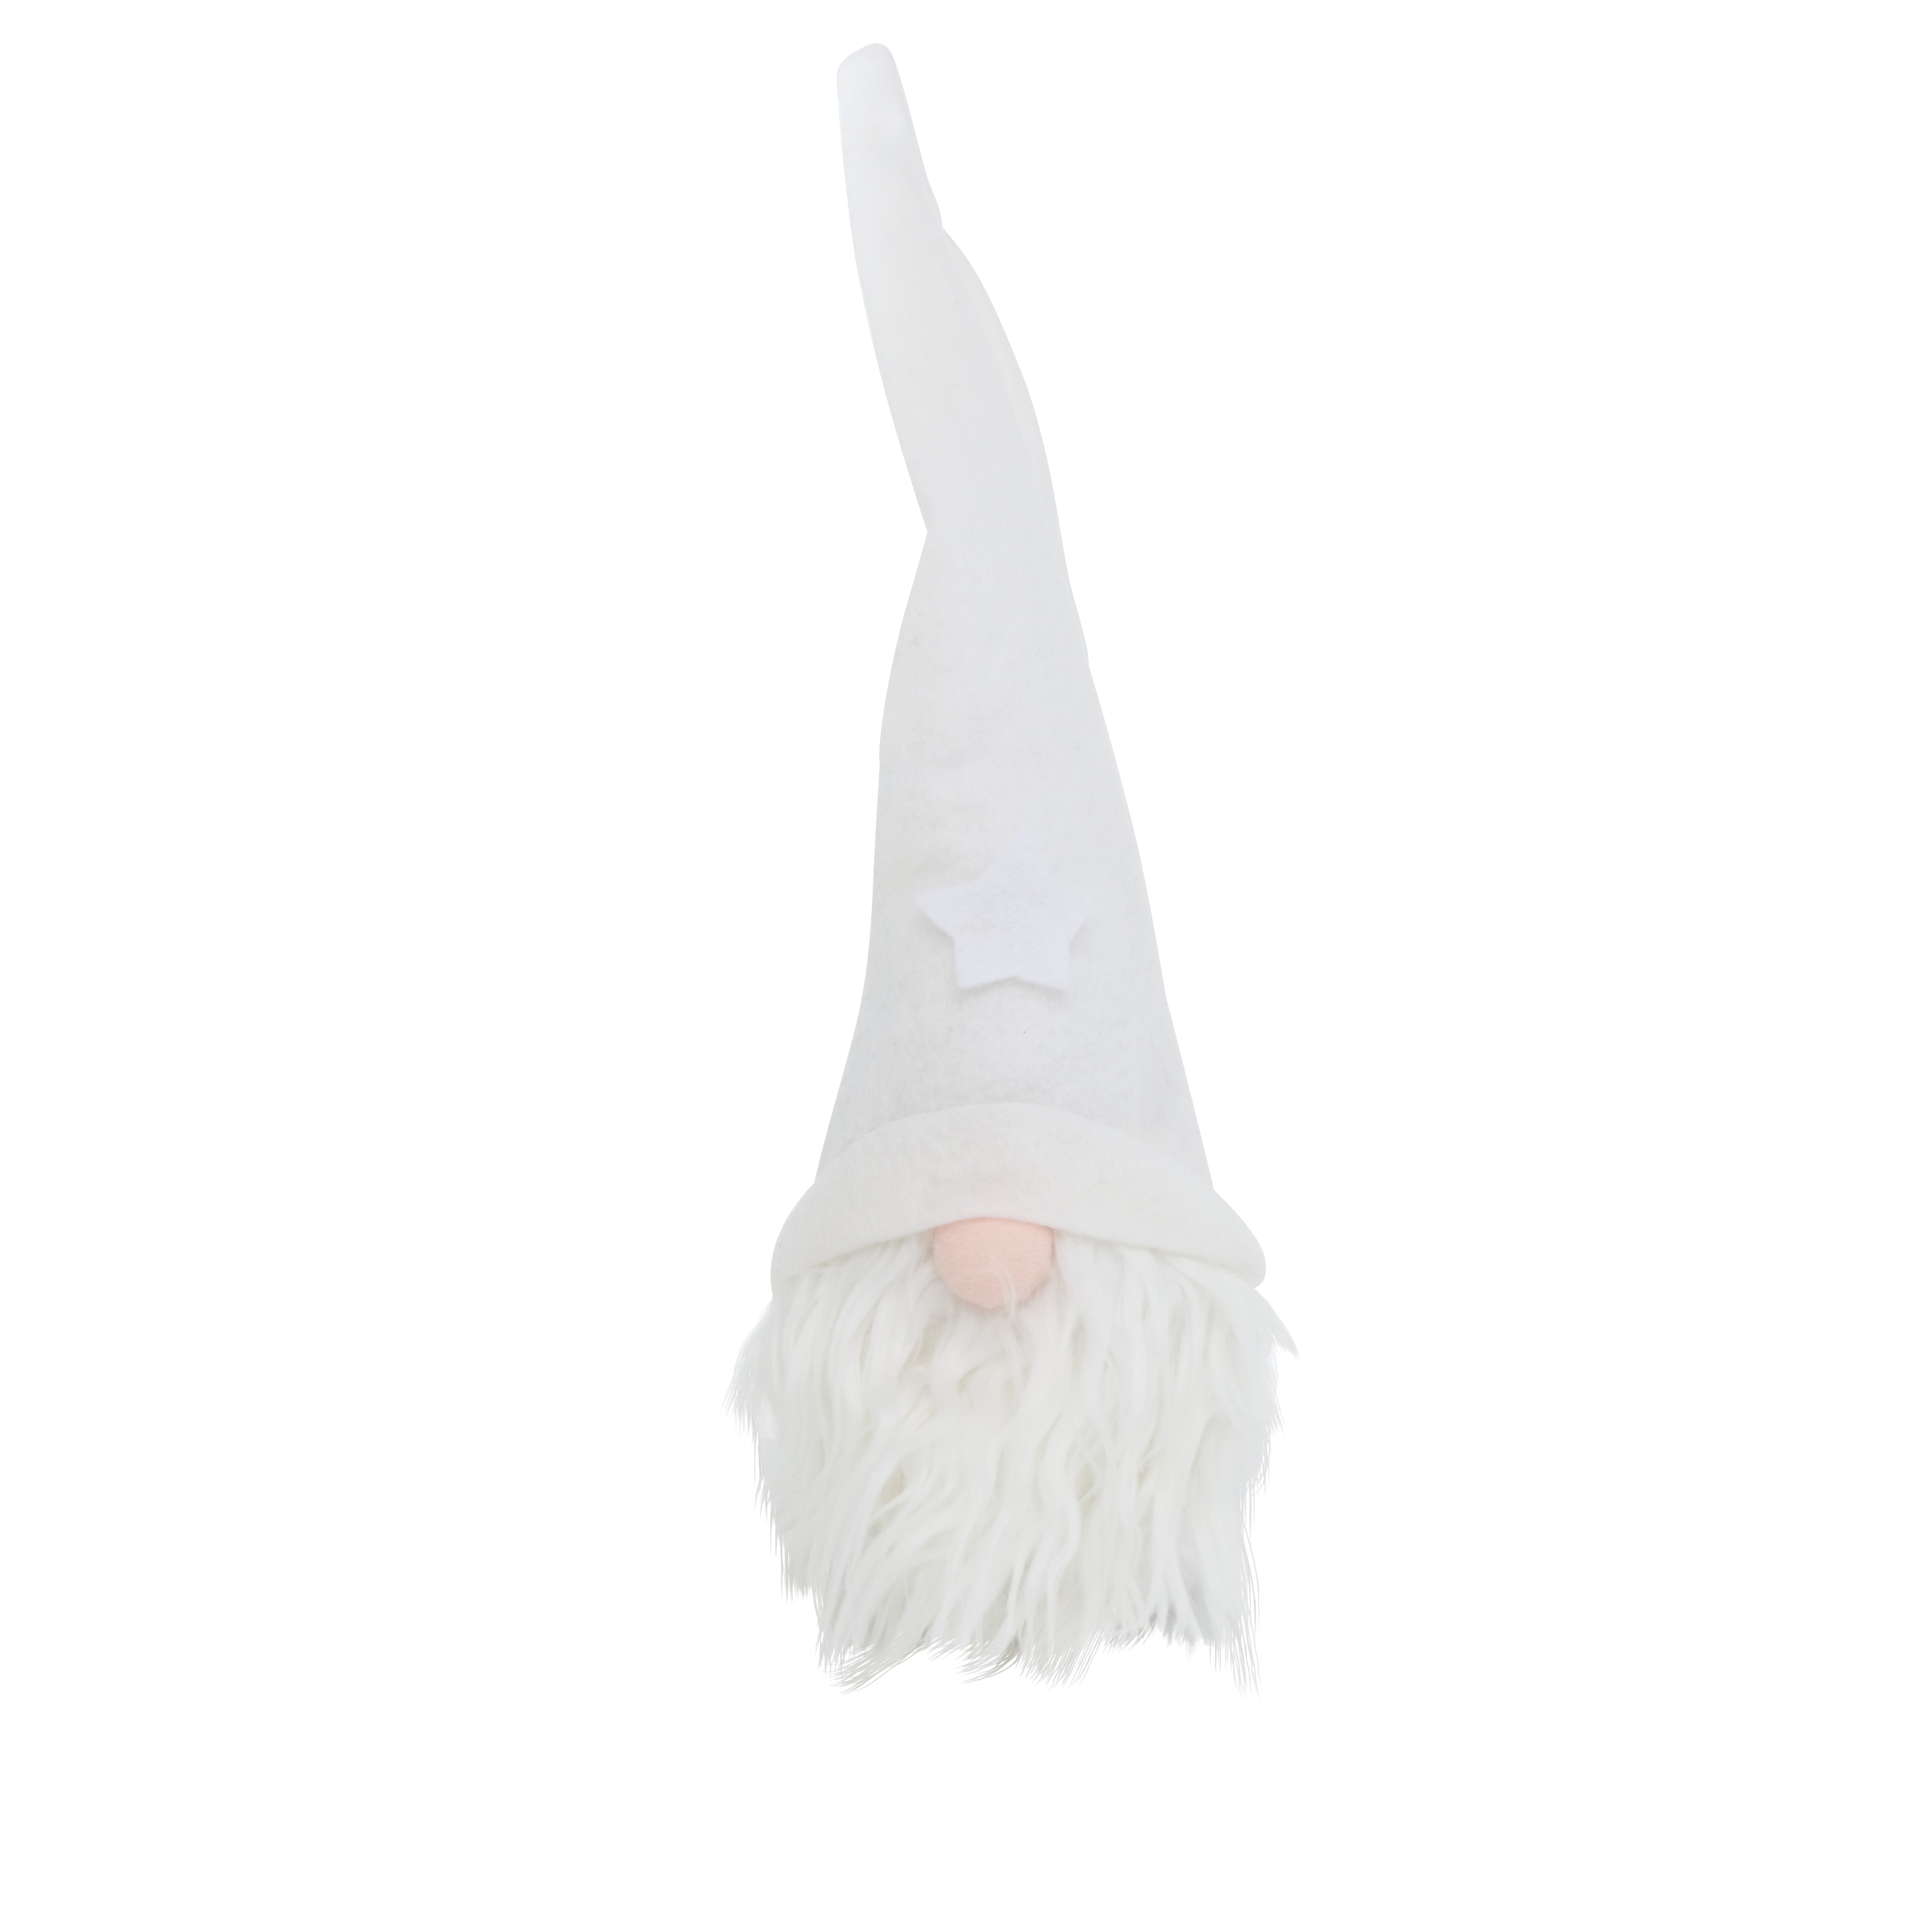 XL Figur Wichtel sand weiß Höhe 40cm, Weihnachtswichtel